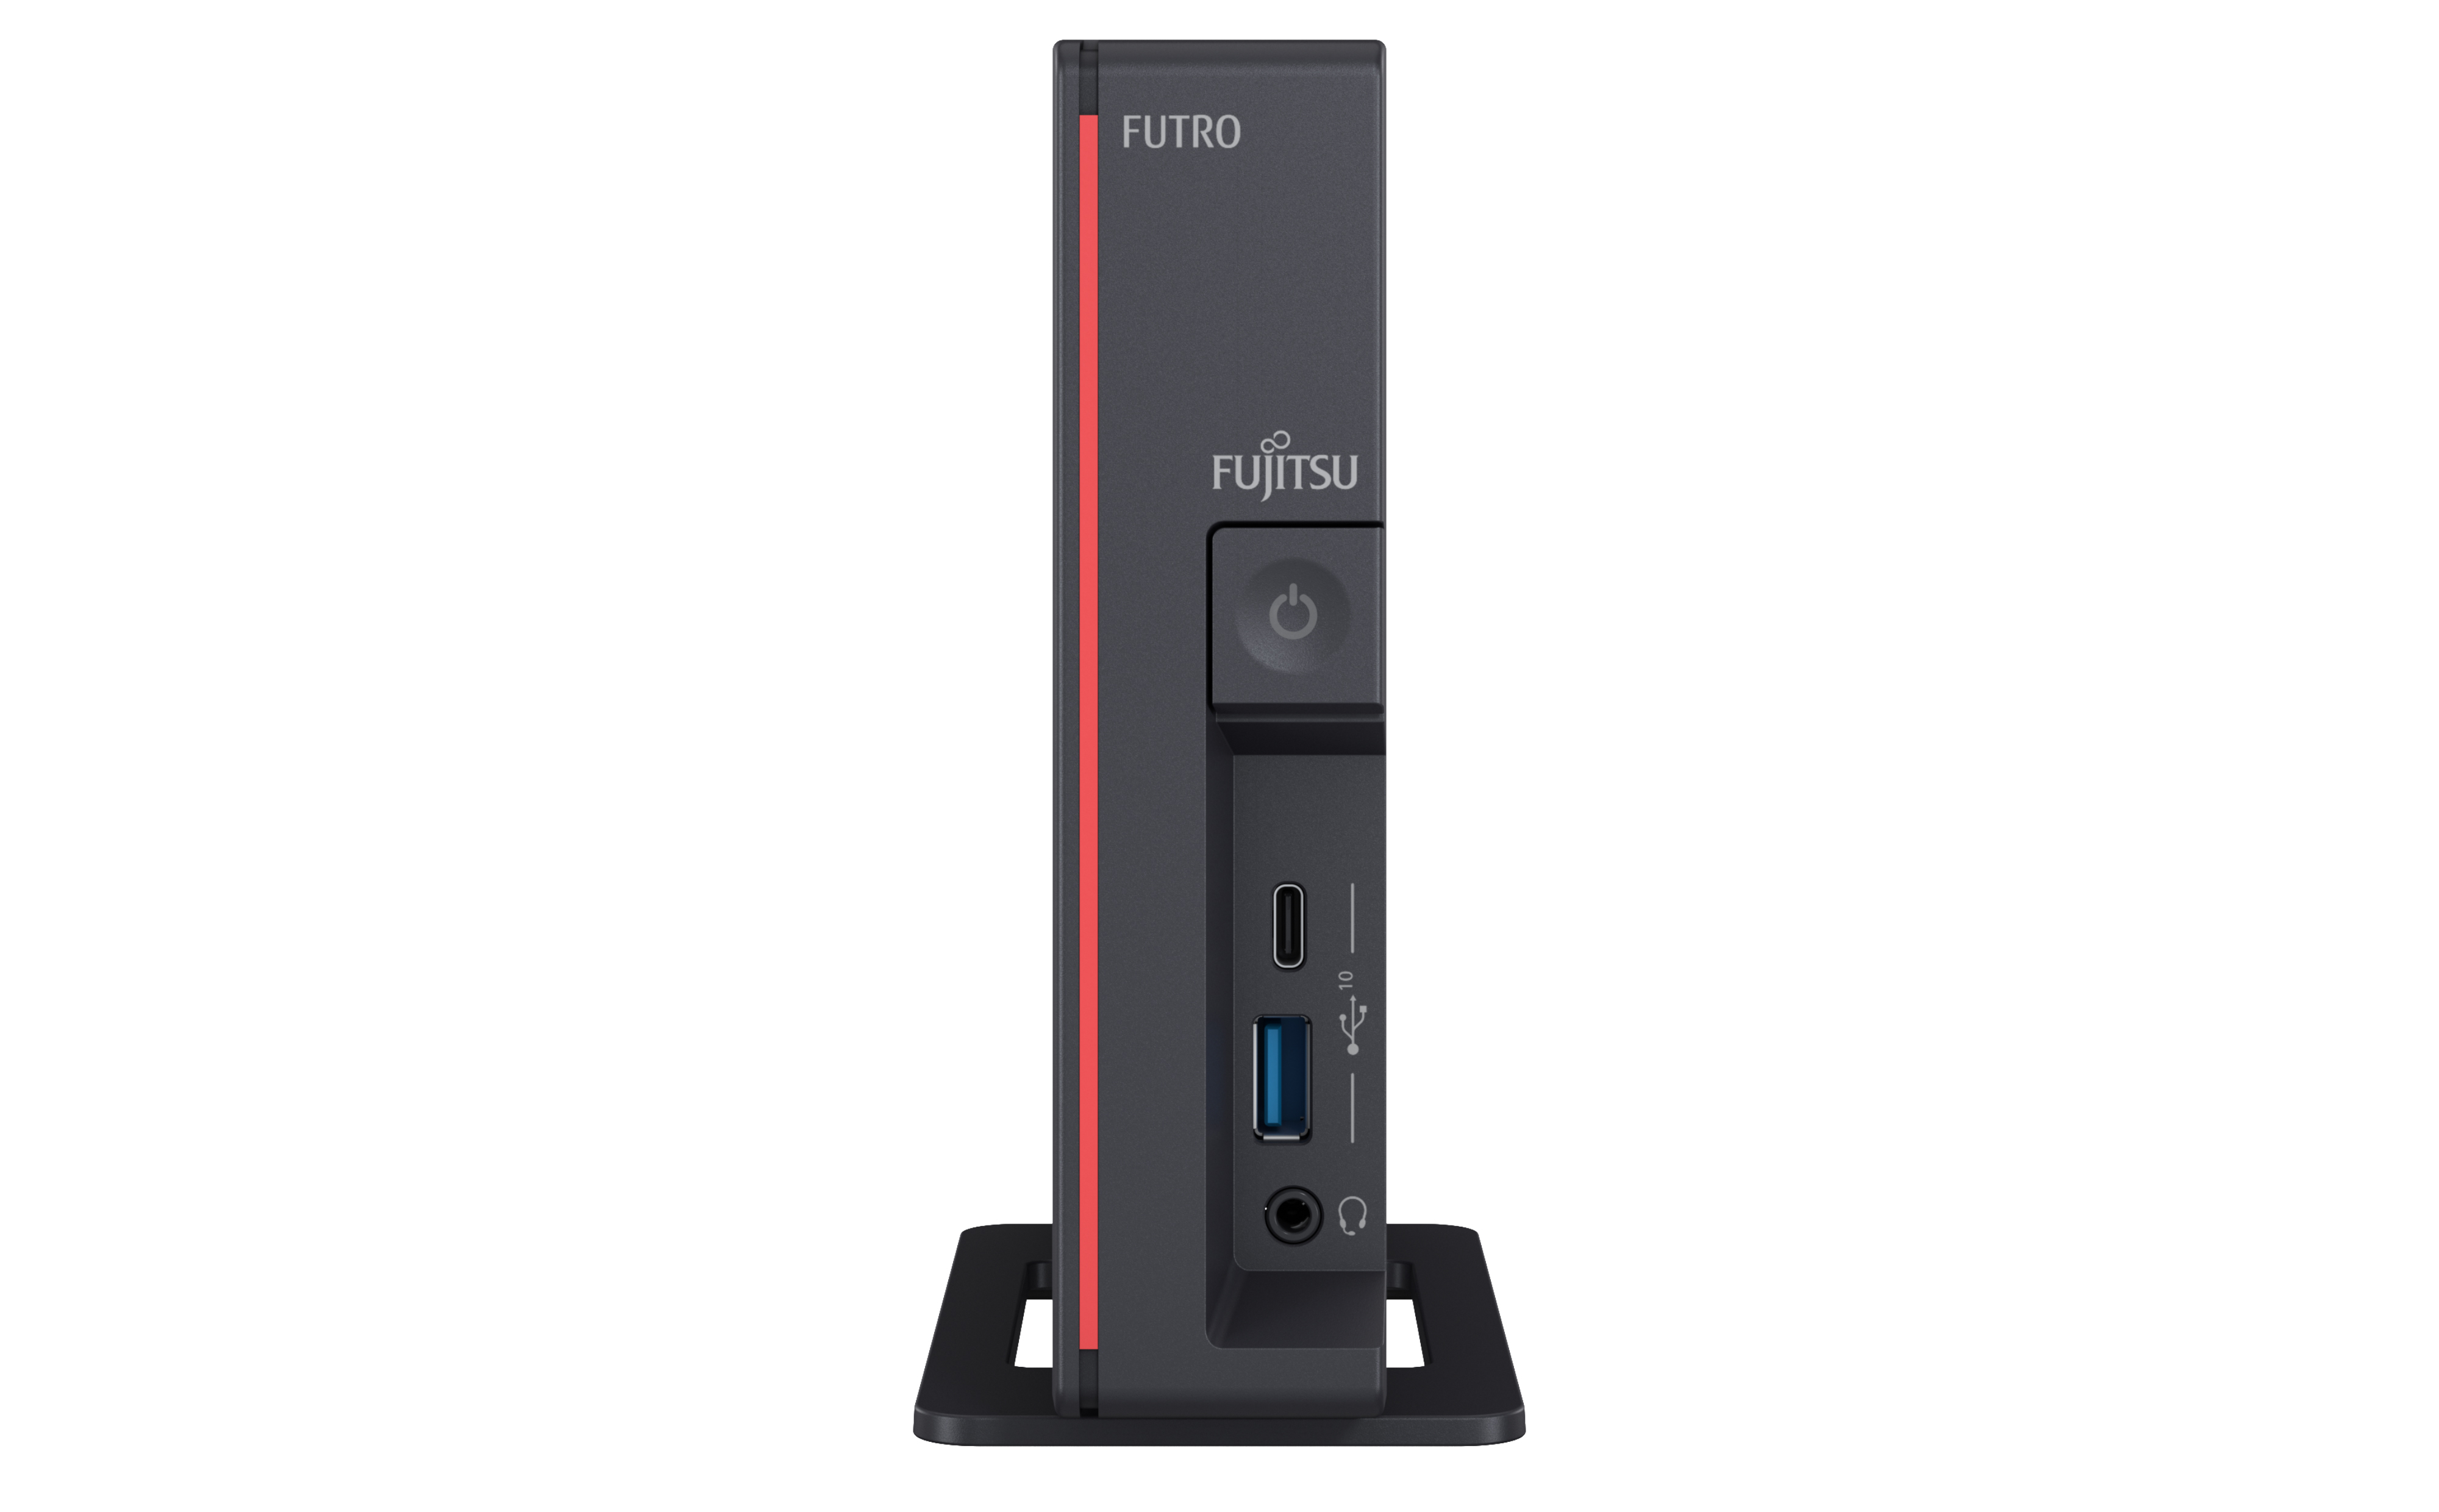 Fujitsu FUTRO S5011 - R1305G - 4GB RAM - 64GB SSD